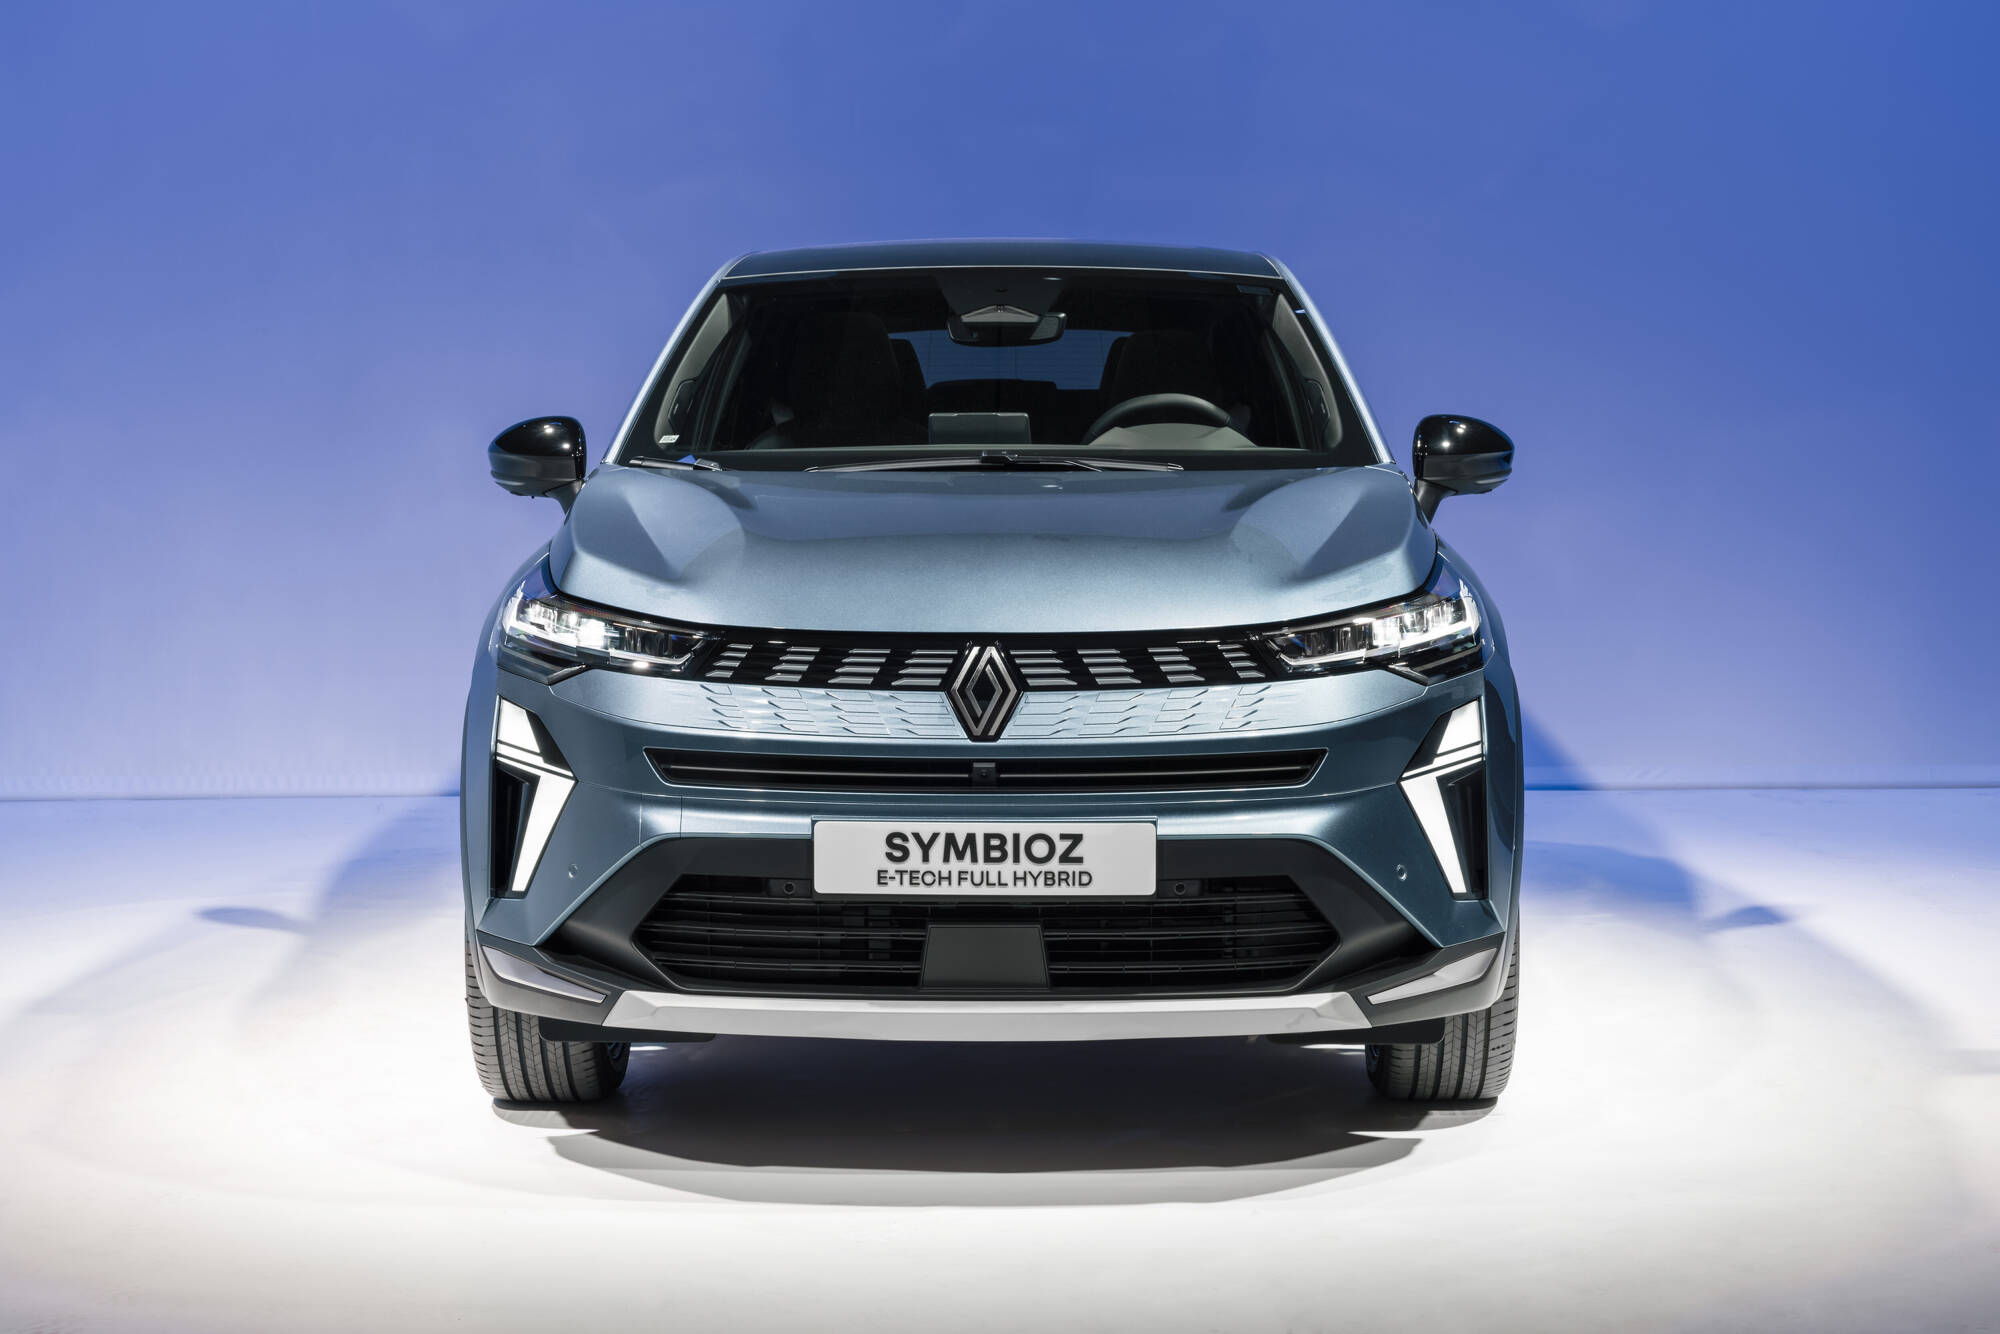 Renault dévoile son nouveau SUV, le Symbioz